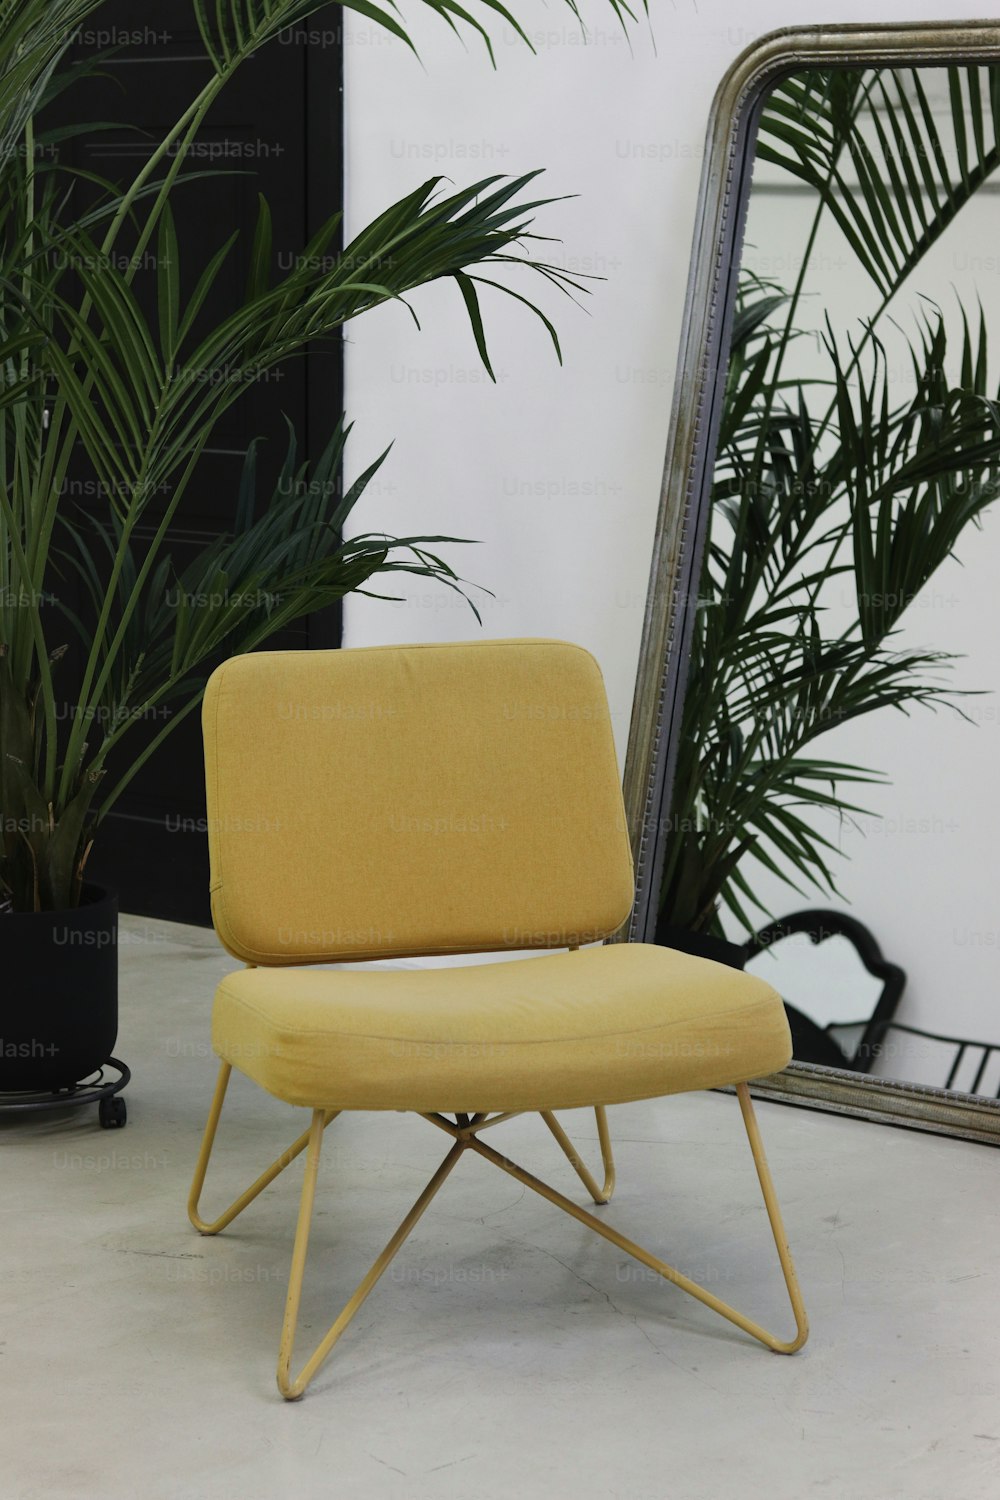 Ein gelber Stuhl sitzt vor einem Spiegel